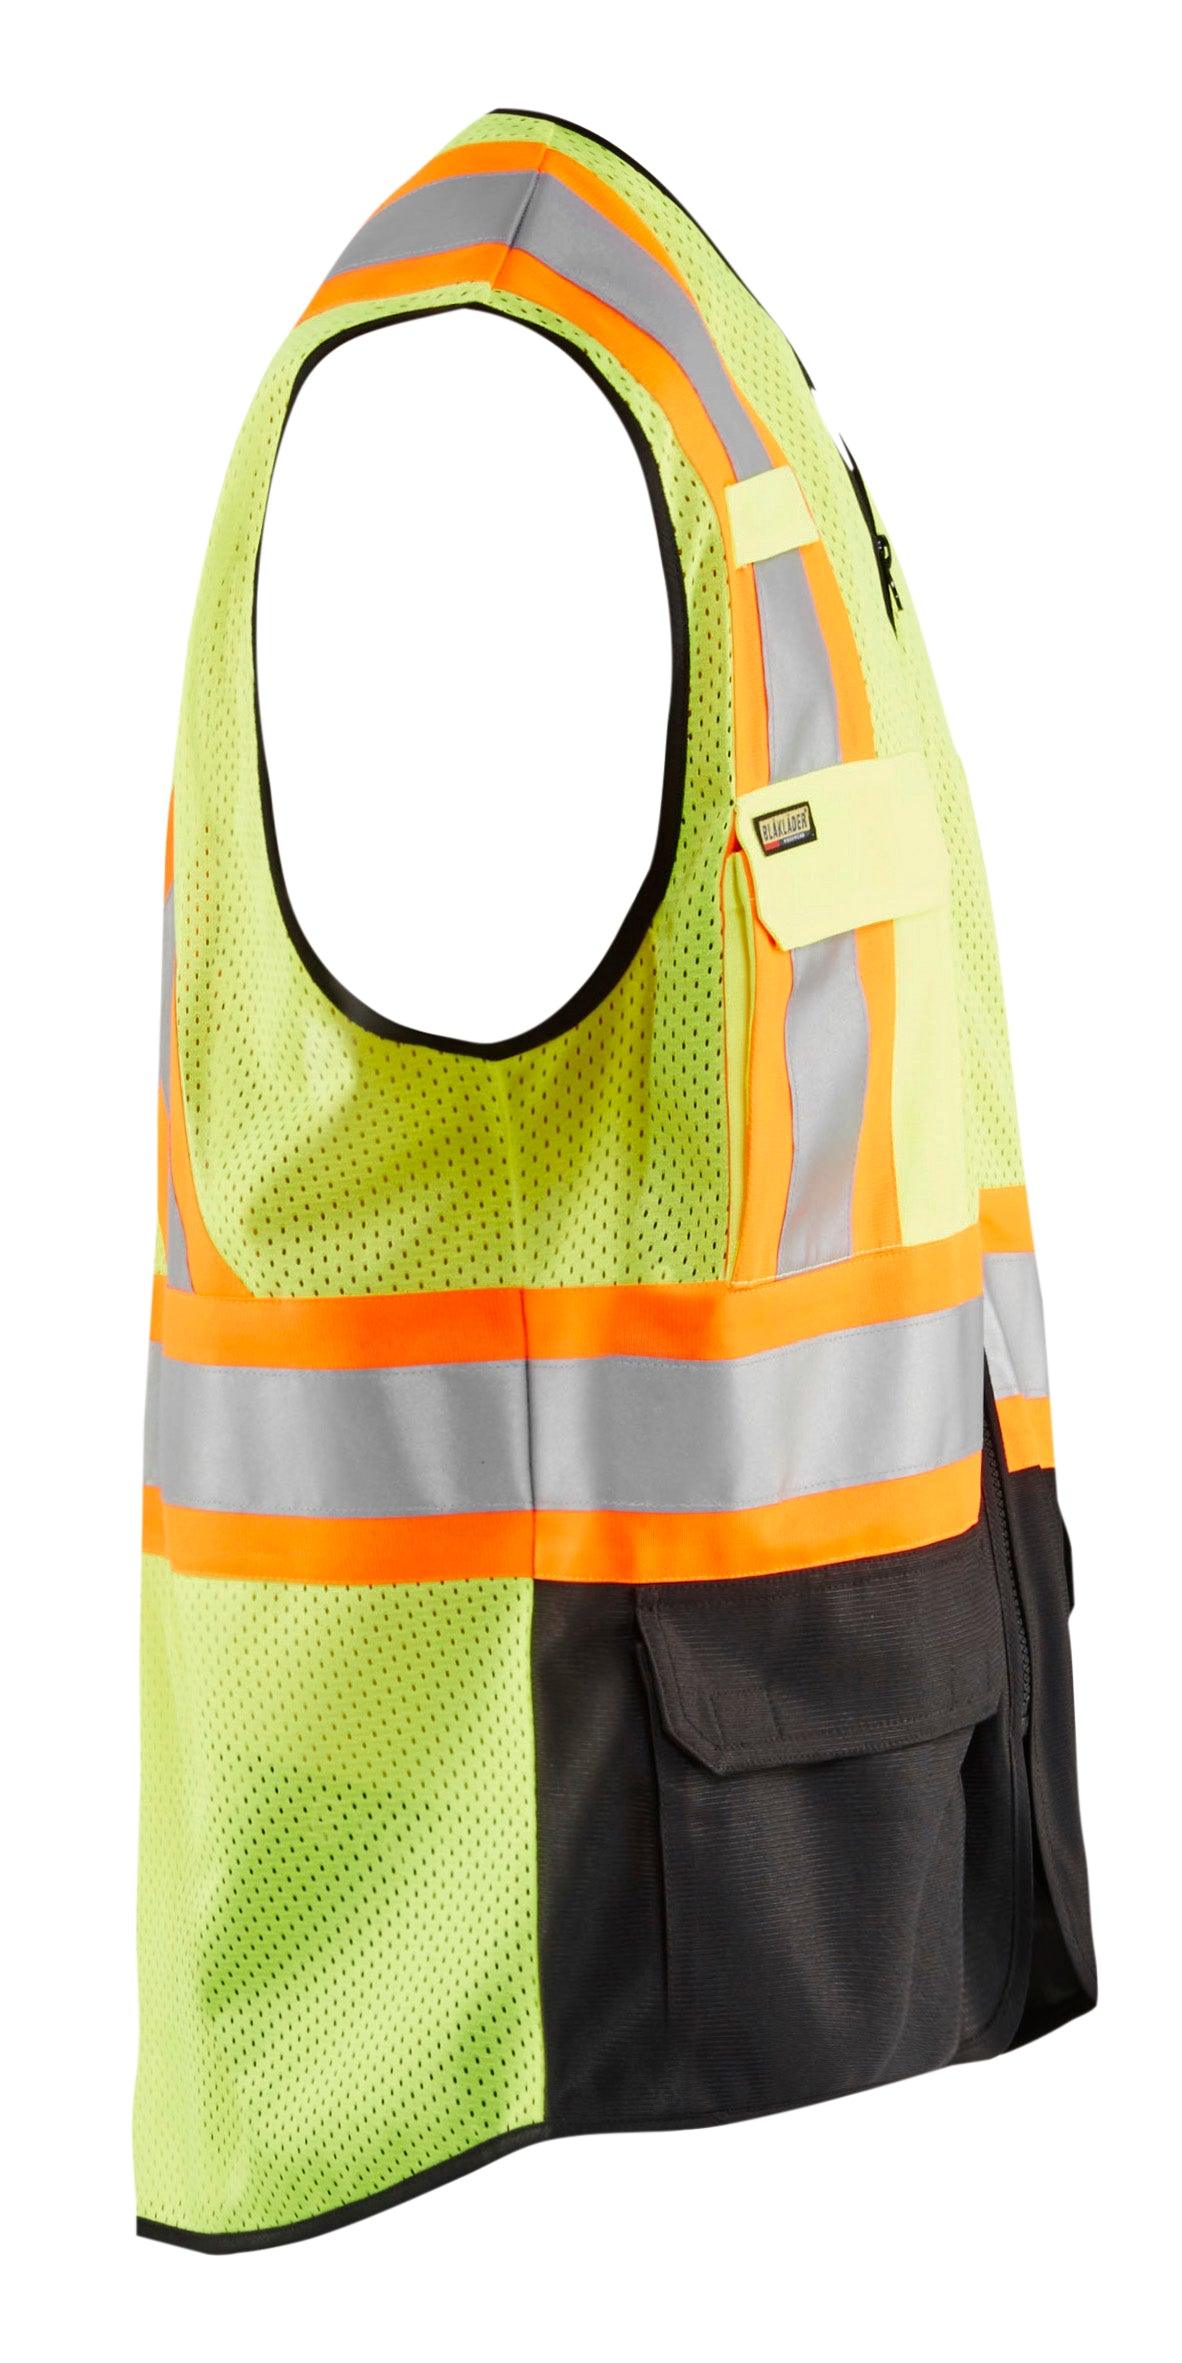 Blaklader 3133 Hi-Vis Safety Vest - Yellow Hi-Vis/Black - Trusted Gear Company LLC